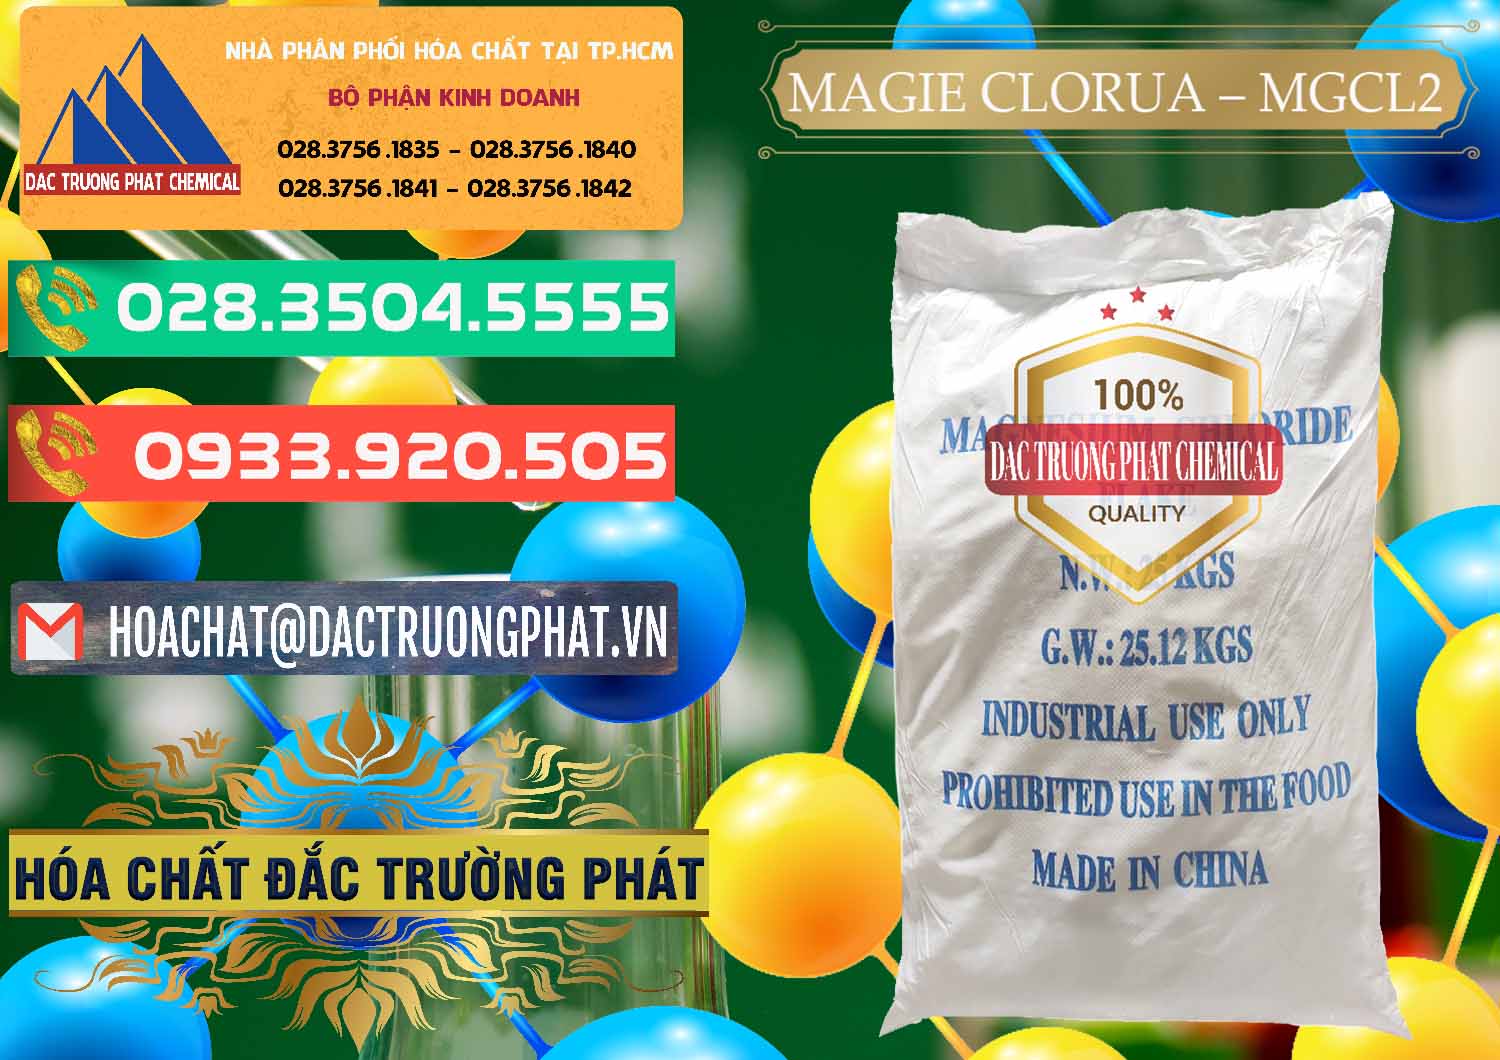 Công ty chuyên bán & cung cấp Magie Clorua – MGCL2 96% Dạng Vảy Trung Quốc China - 0091 - Cty chuyên phân phối _ bán hóa chất tại TP.HCM - congtyhoachat.com.vn